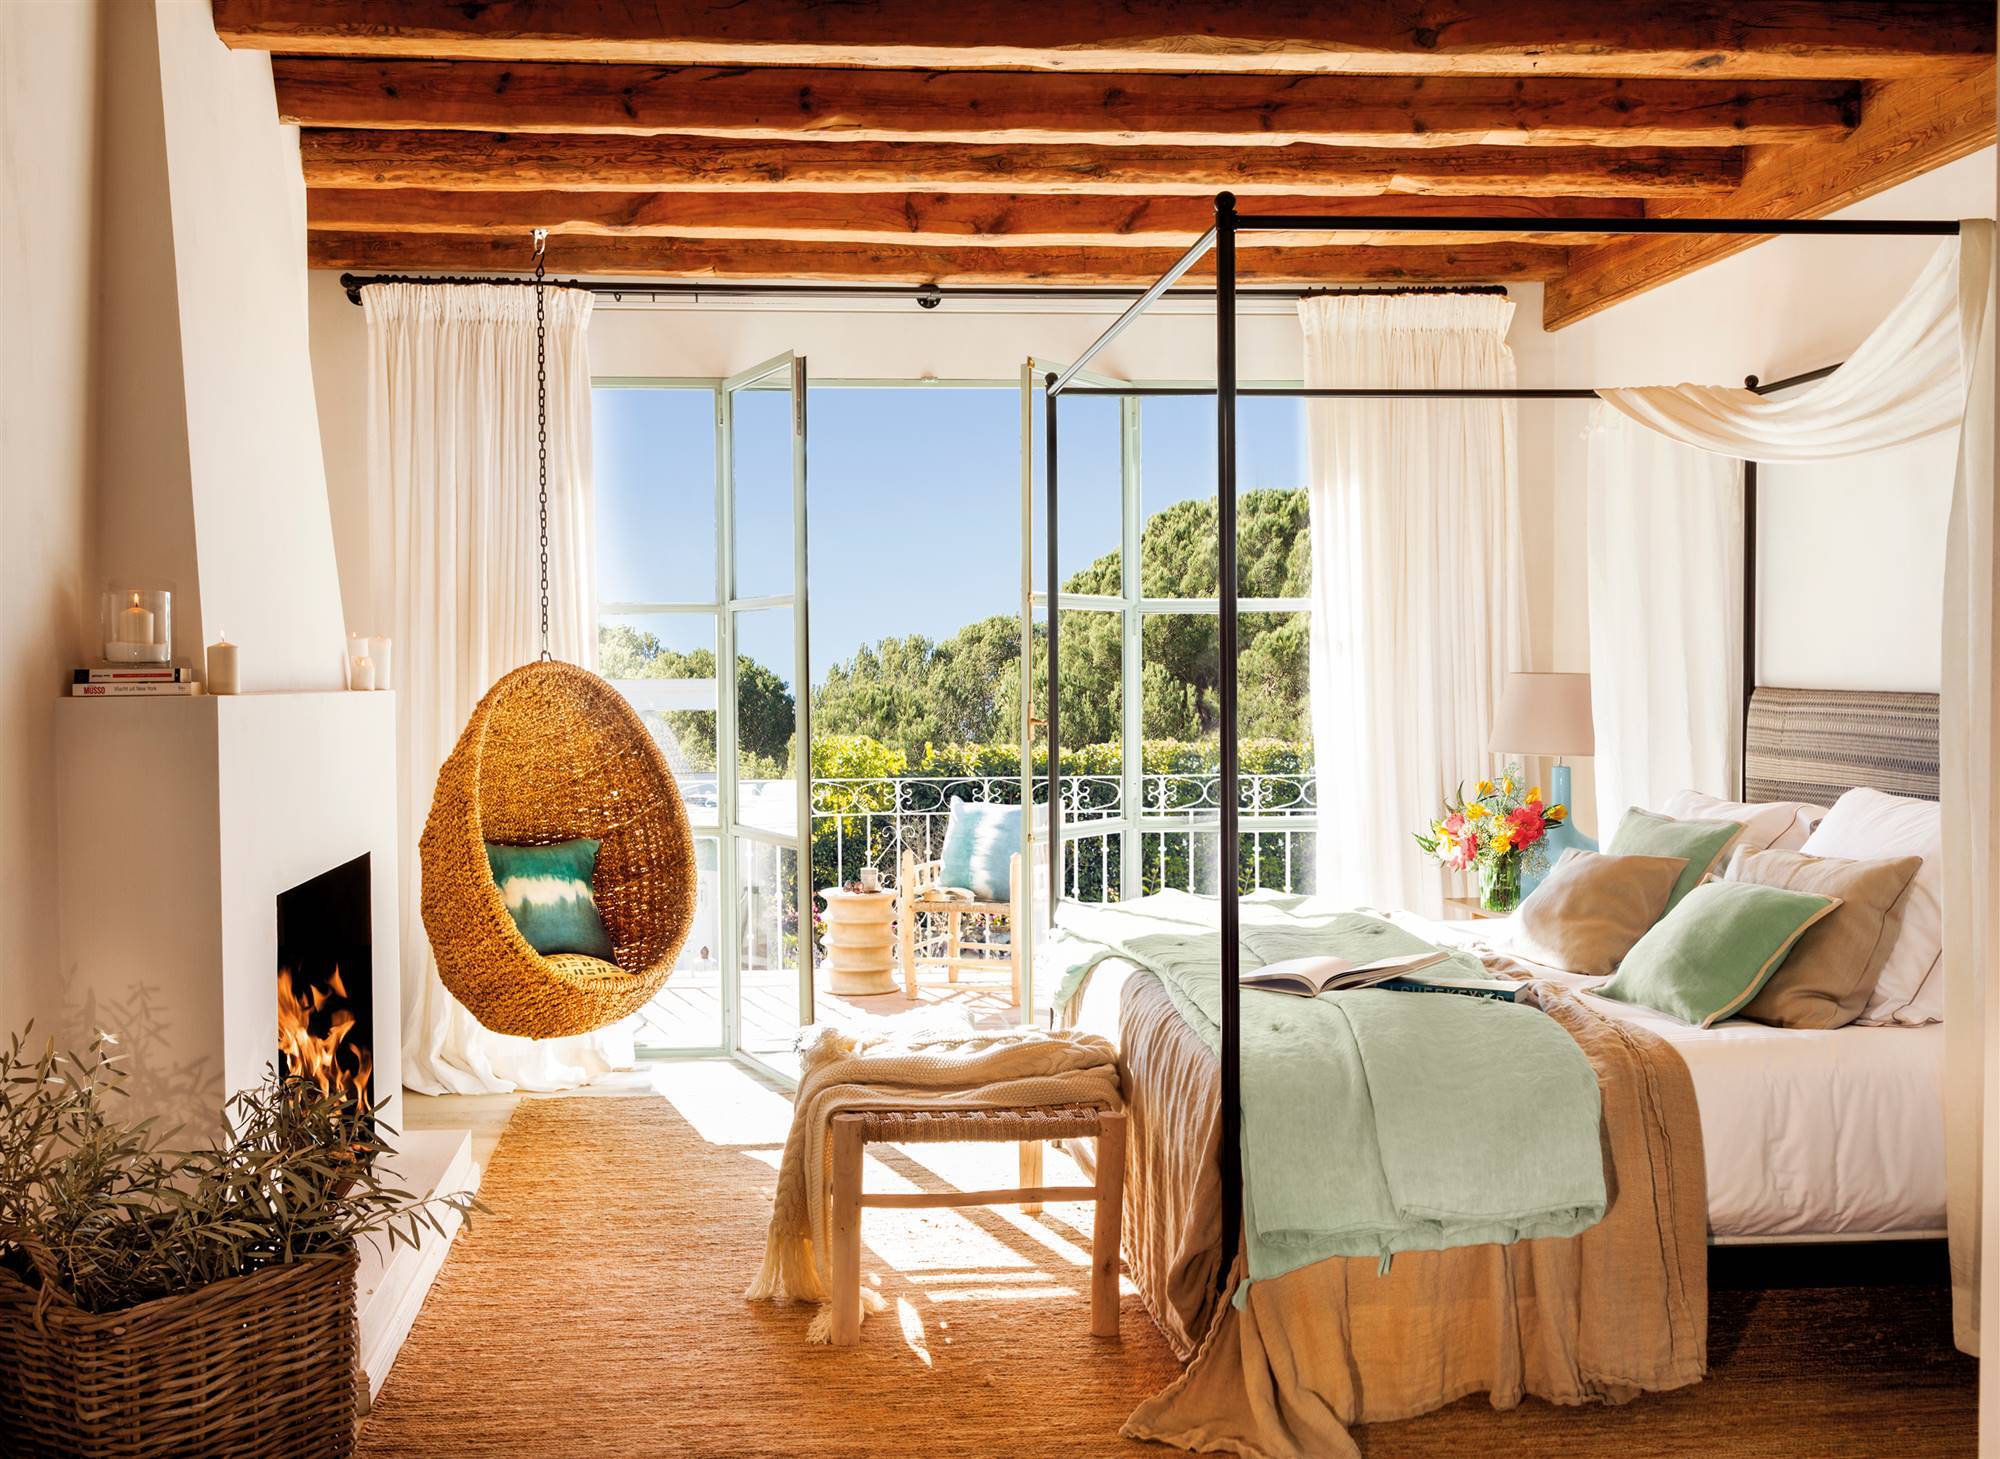 Dormitorio con cama con dosel metálico, columpio de fibras, alfombra de fibras, vigas de madera, chimenea y acceso a la terraza. 